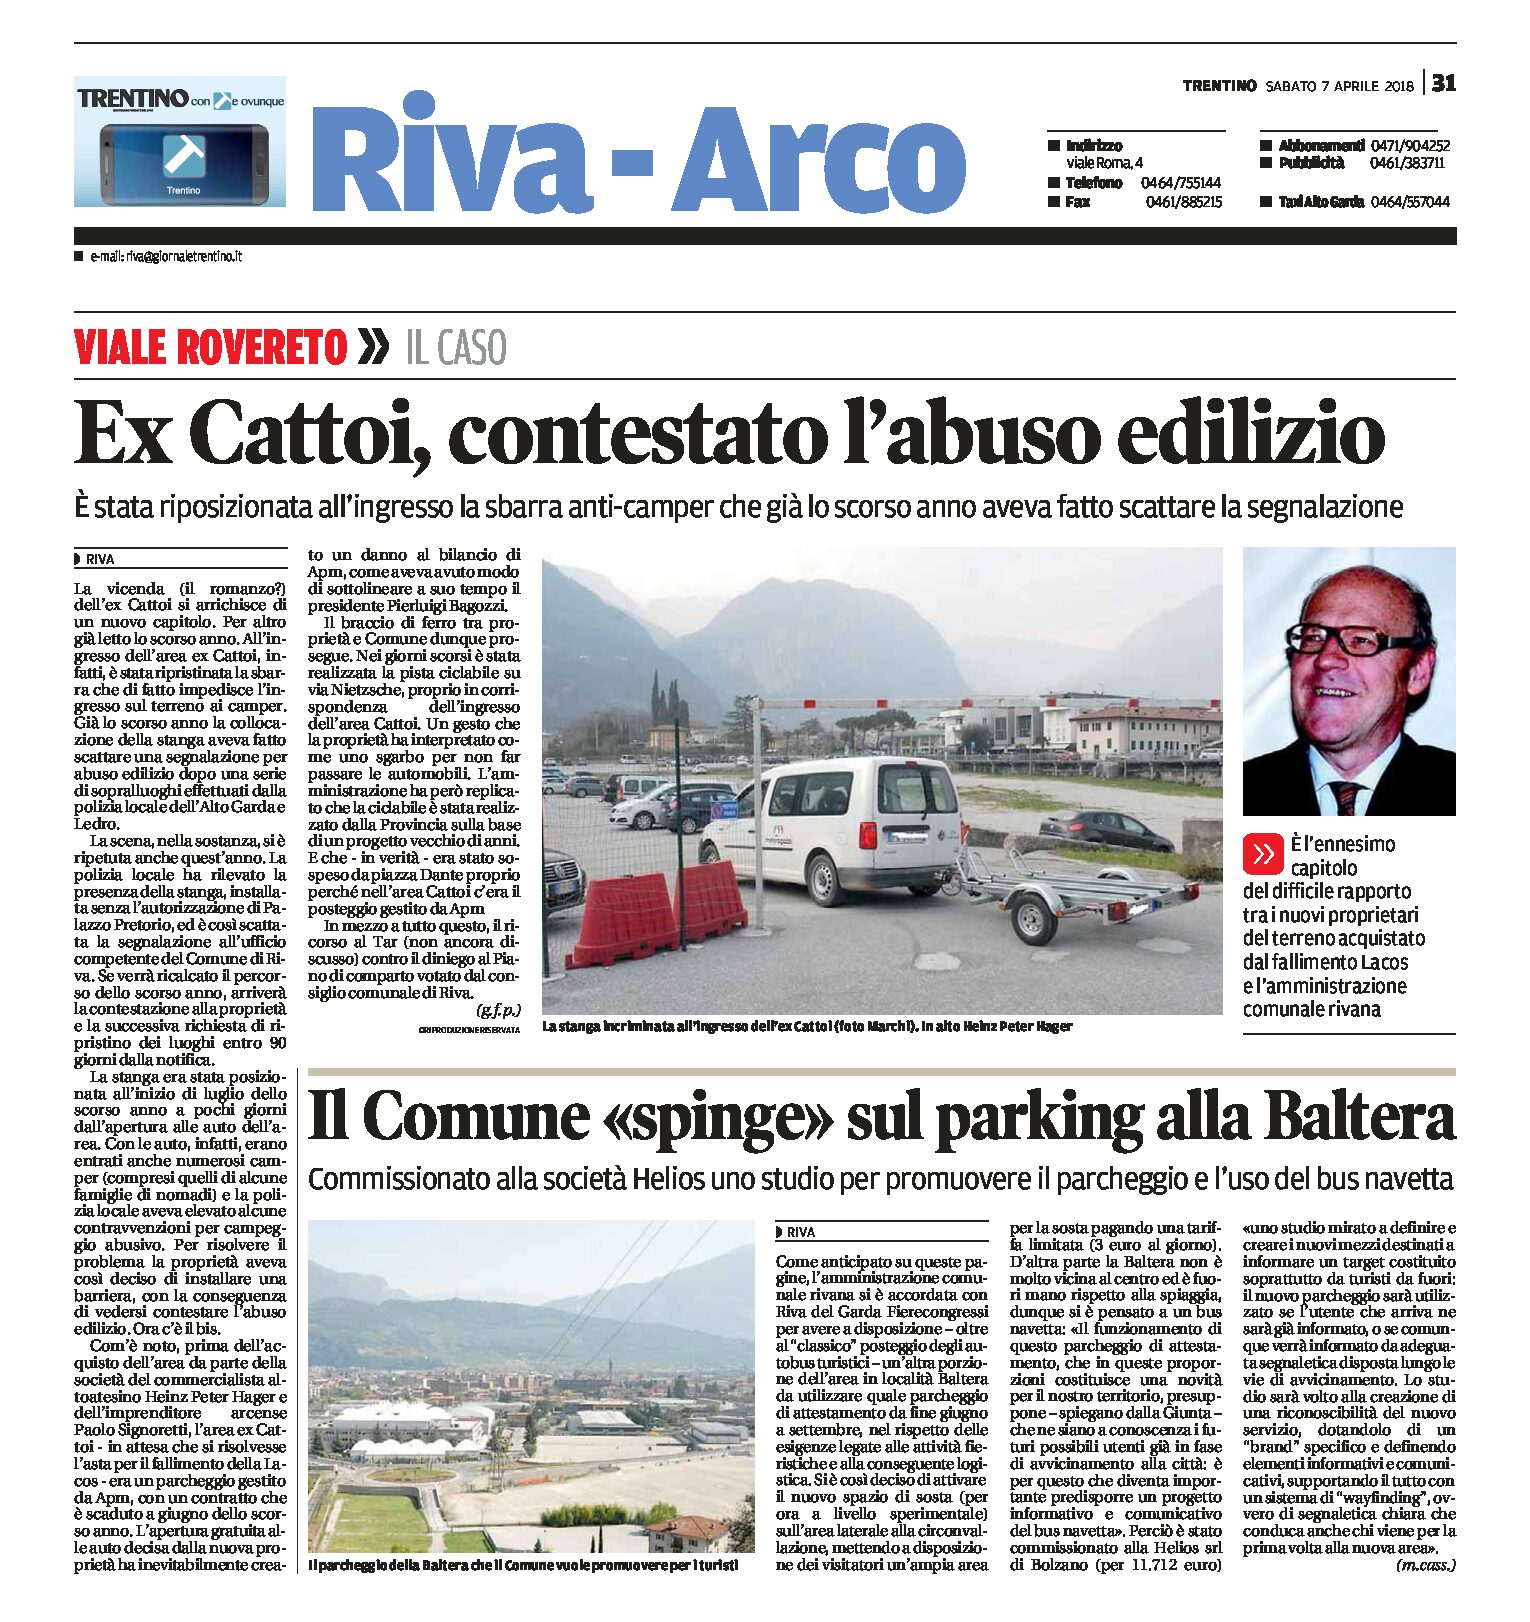 Riva: ex Cattoi contestato l’abuso edilizio. Il Comune verso il parking alla Baltera